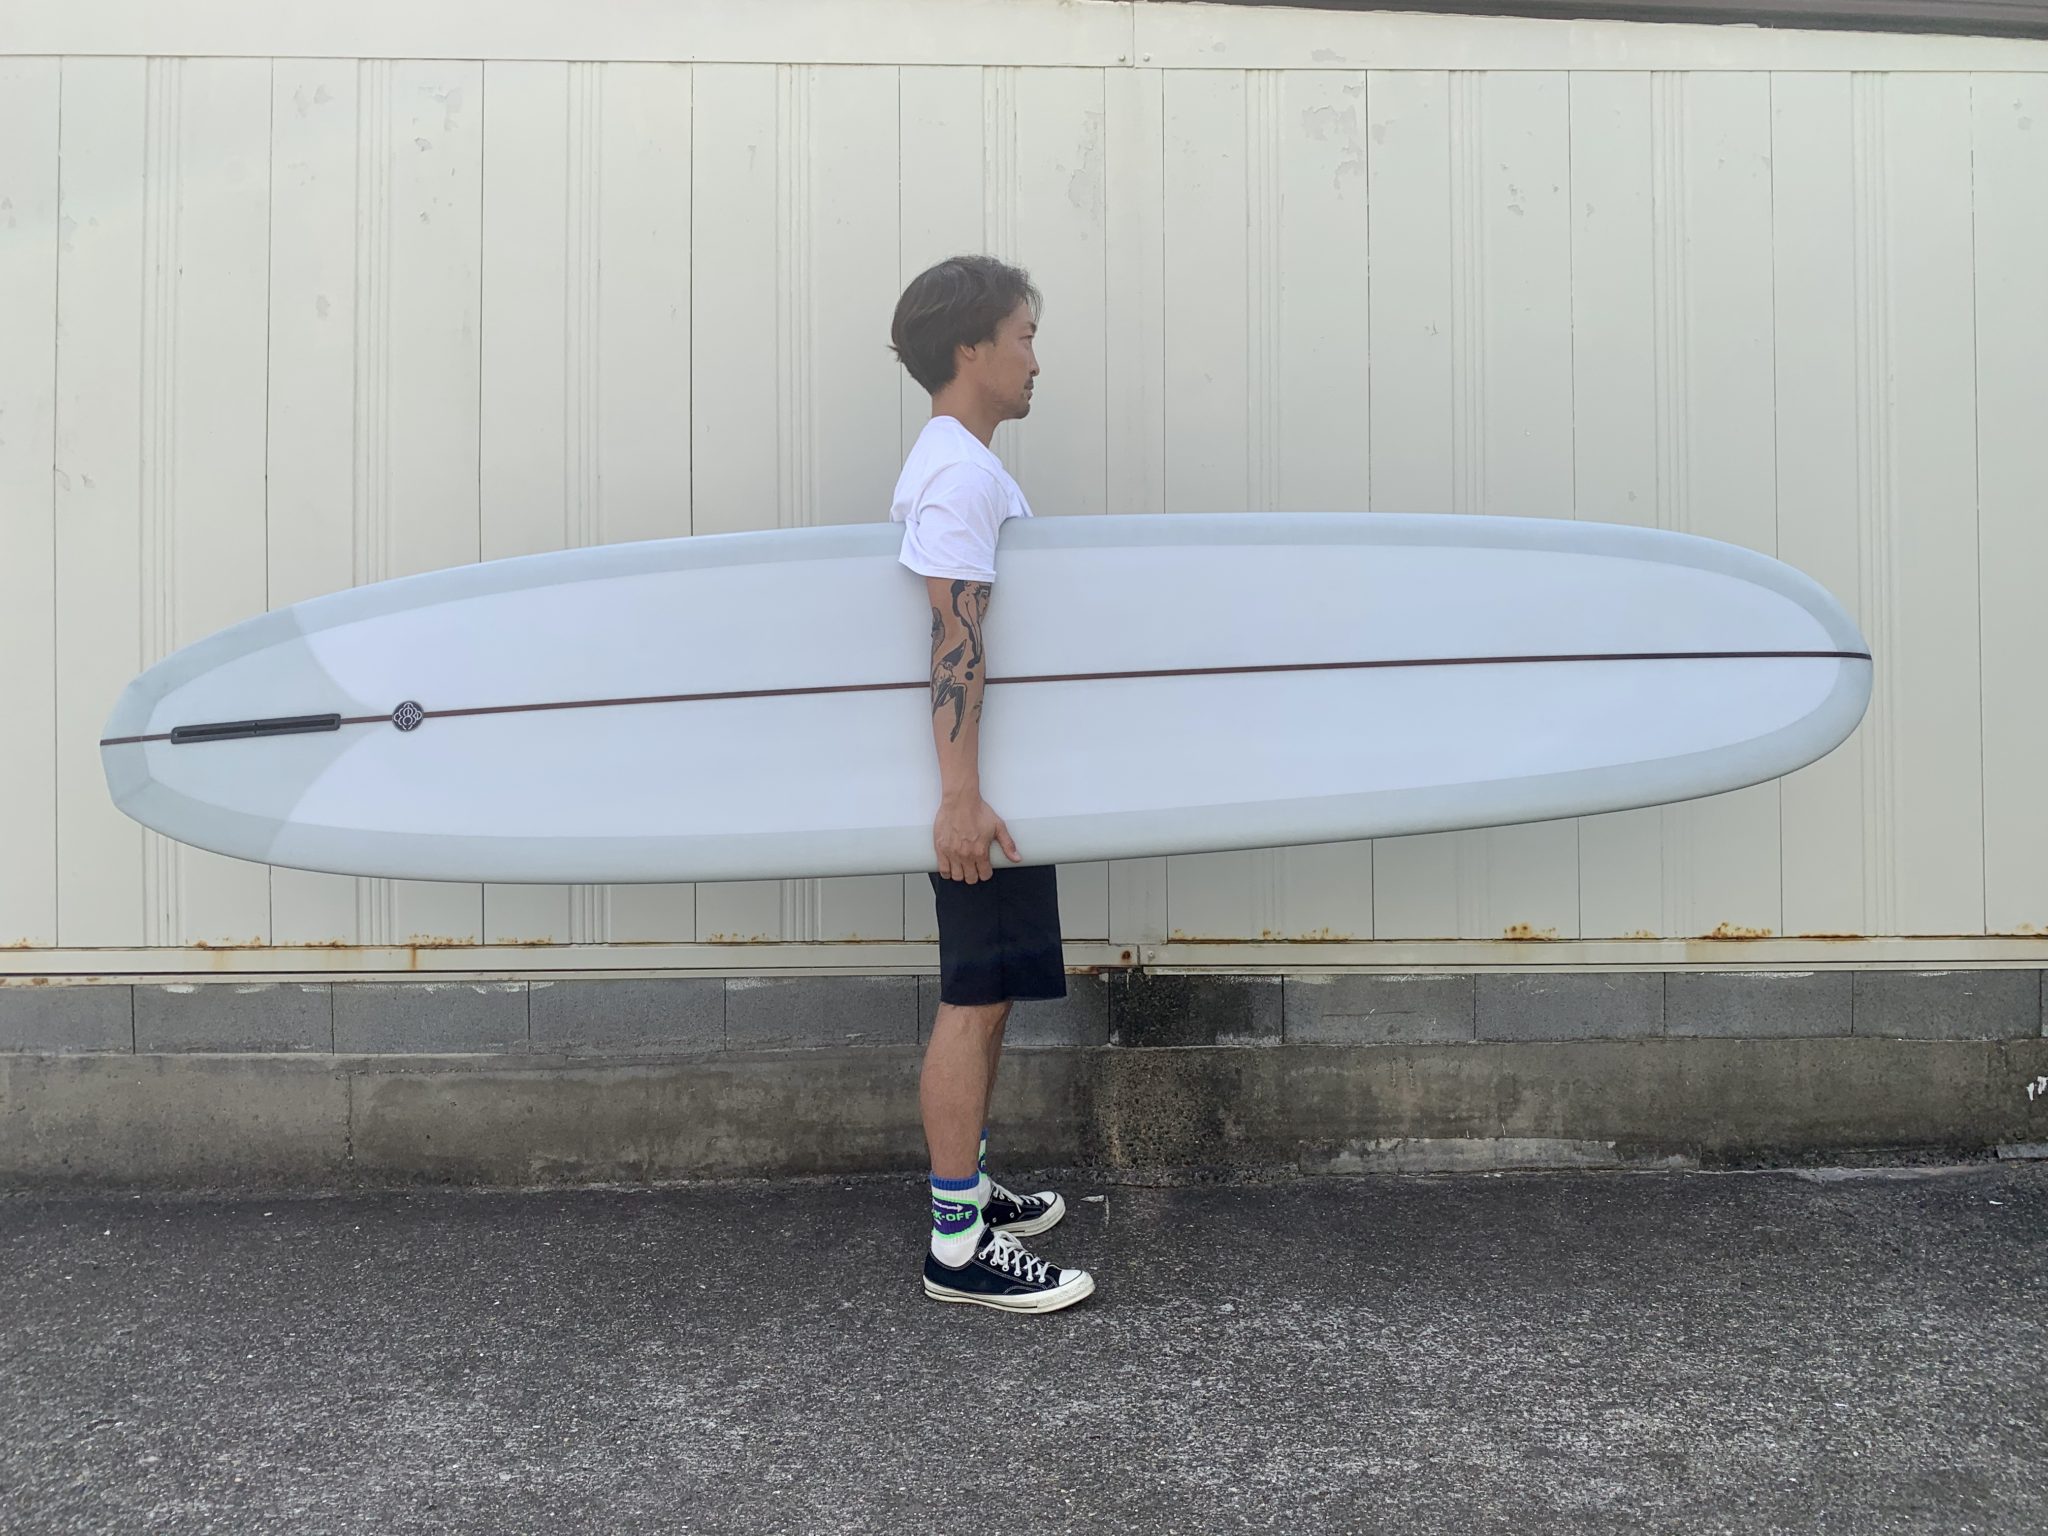 カリフォルニアより『EC SURFBOARDS』がデリバリー♪ | NAKISURFスタッフブログ | ナキサーフボードカリフォルニア